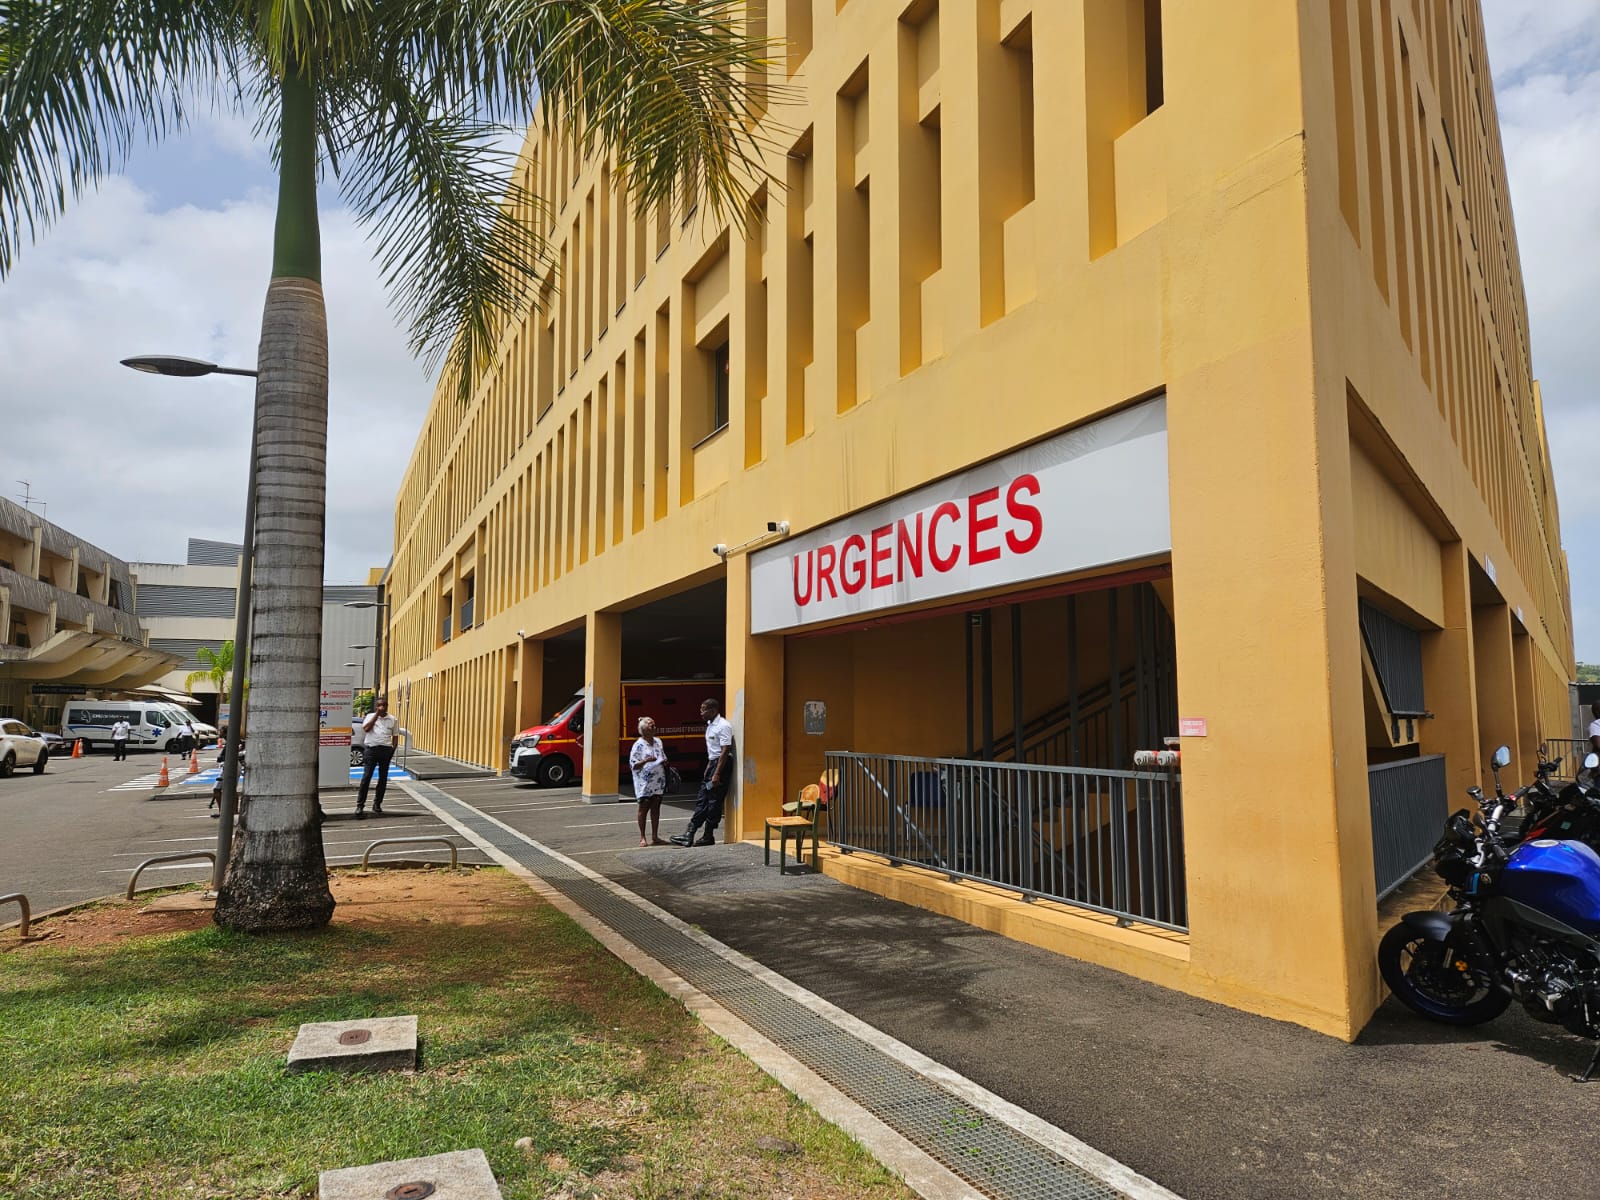     Après l’agression d’un médecin, la sécurité renforcée au CHU de la Martinique

